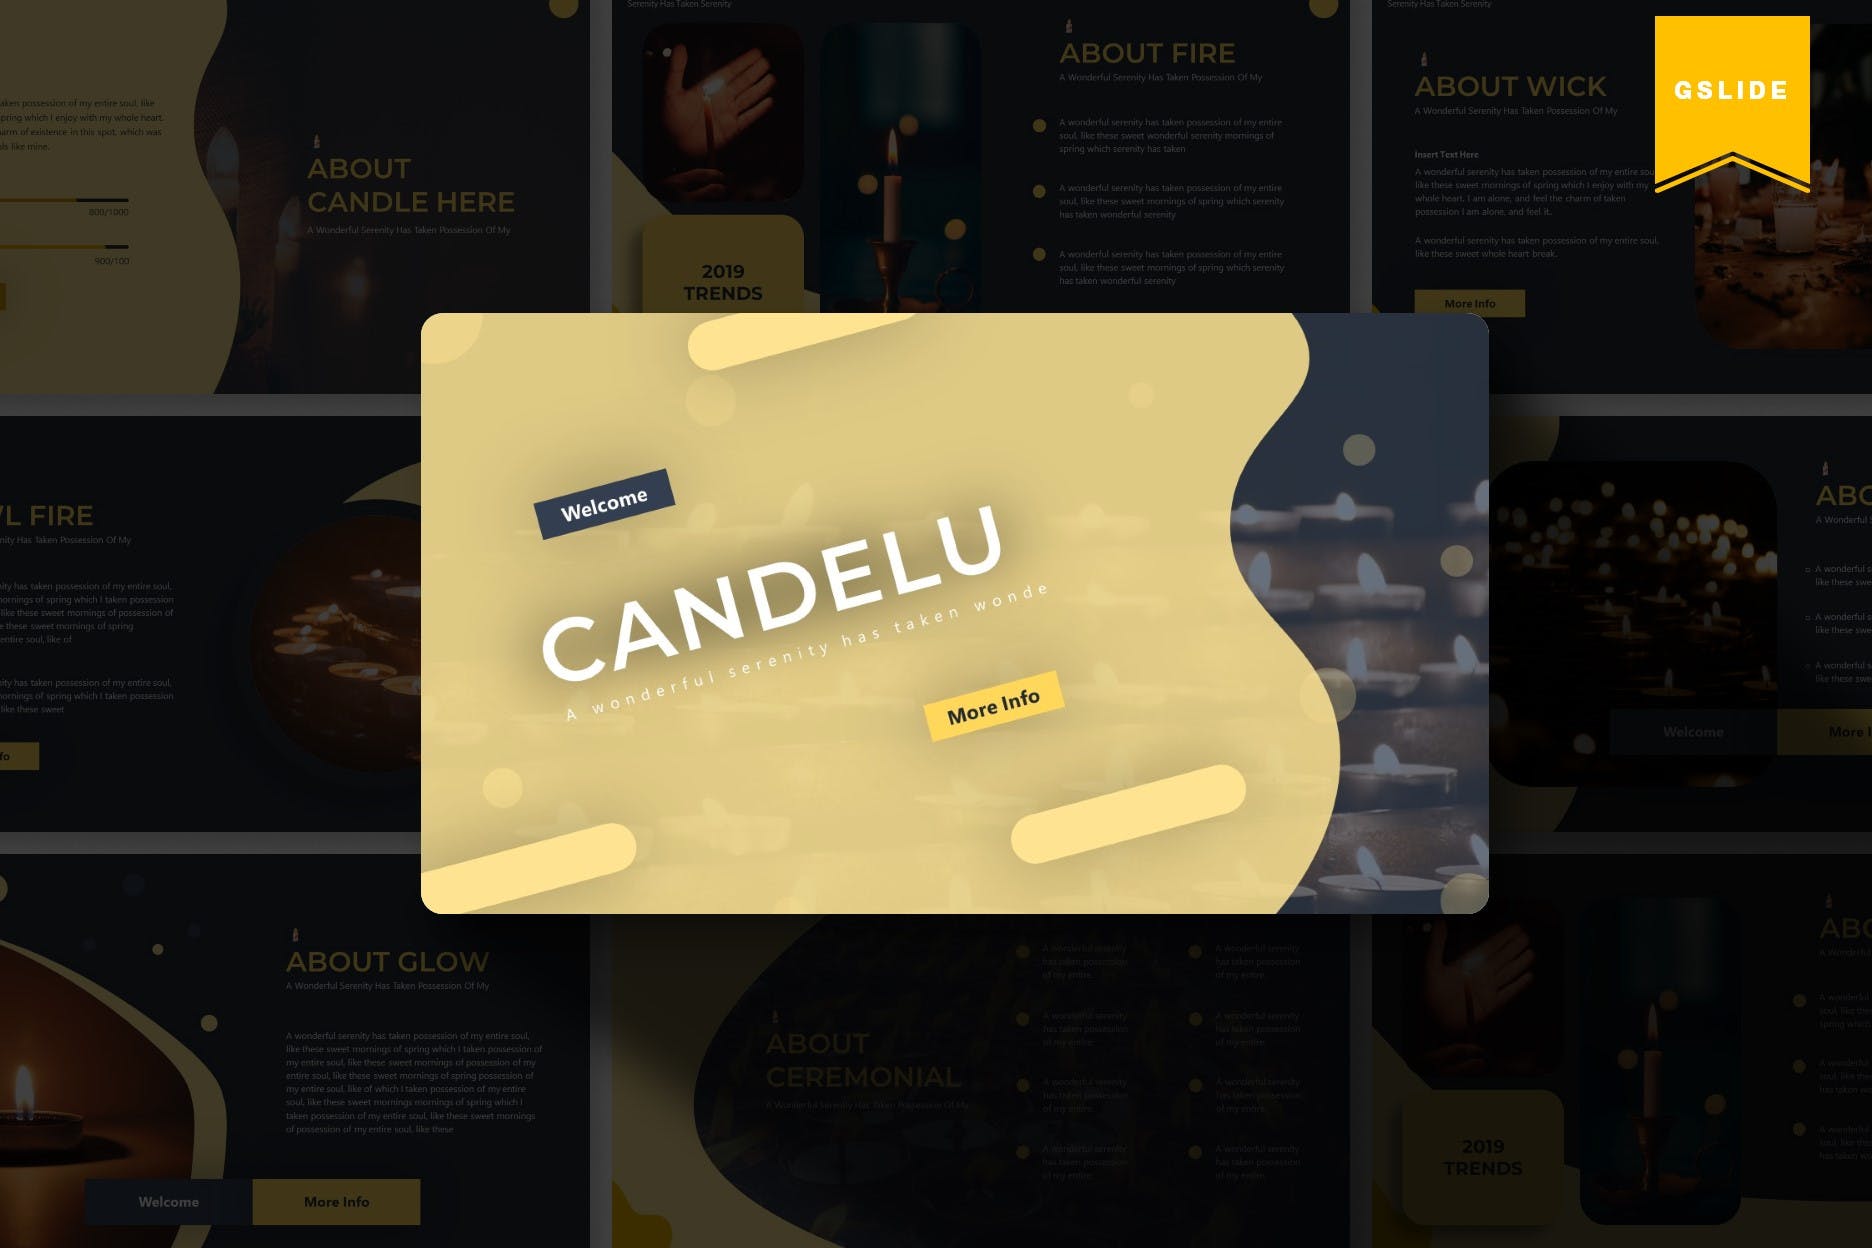 烛光蜡烛元素版式设计第一素材精选谷歌演示模板 Candelu | Google Slides Template插图